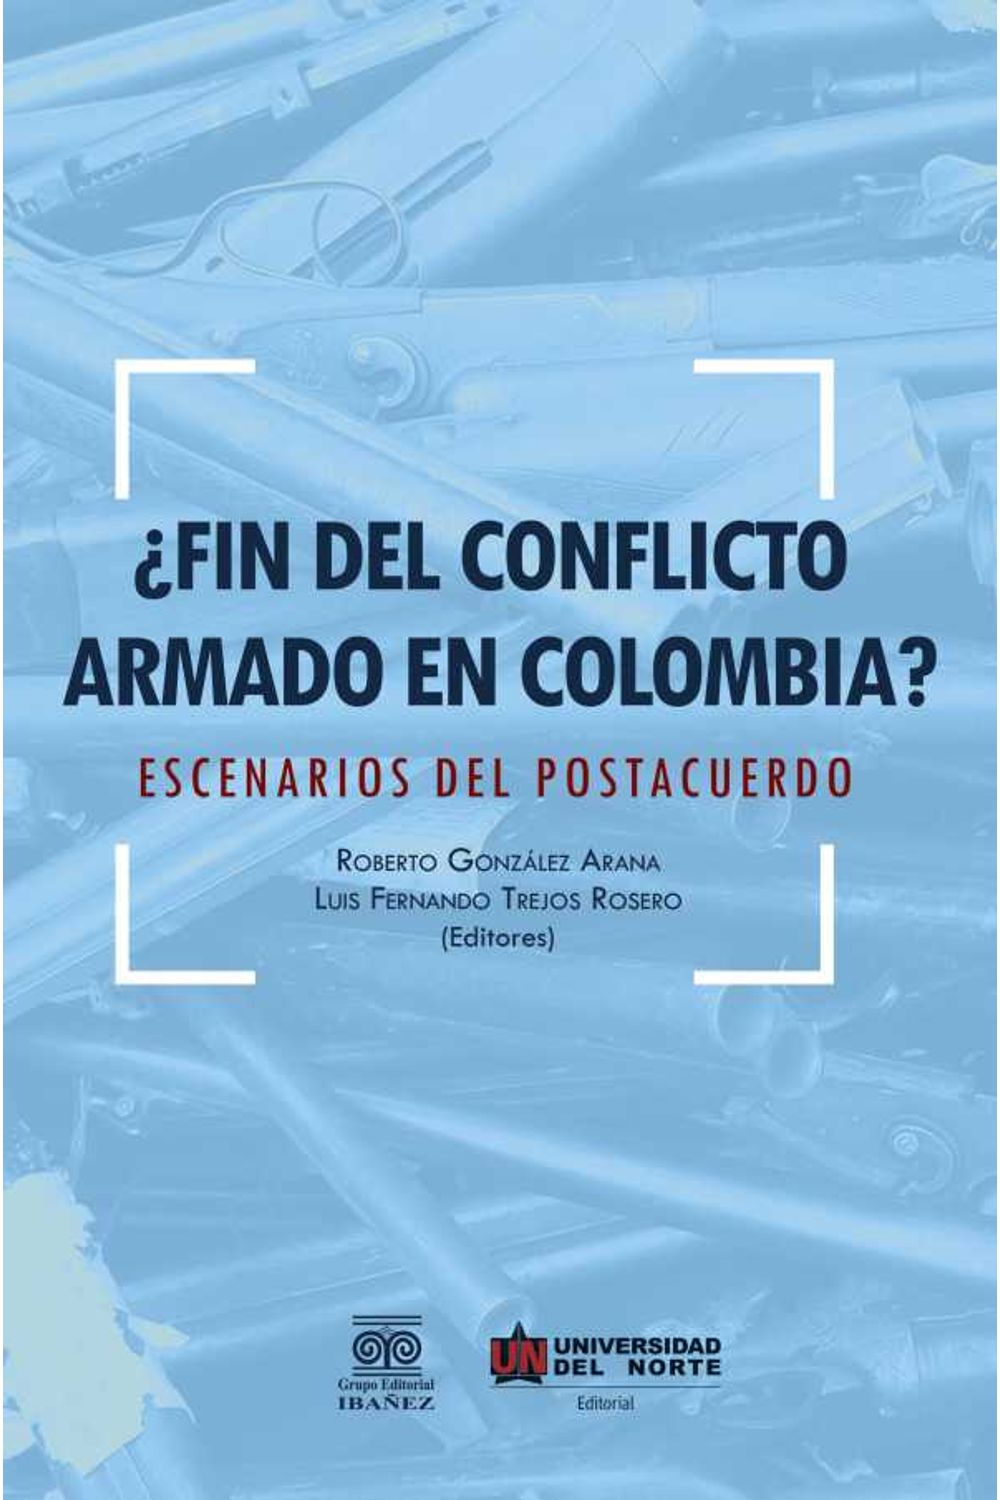 bw-iquestfin-del-conflicto-armado-en-colombia-u-del-norte-editorial-9789587417340